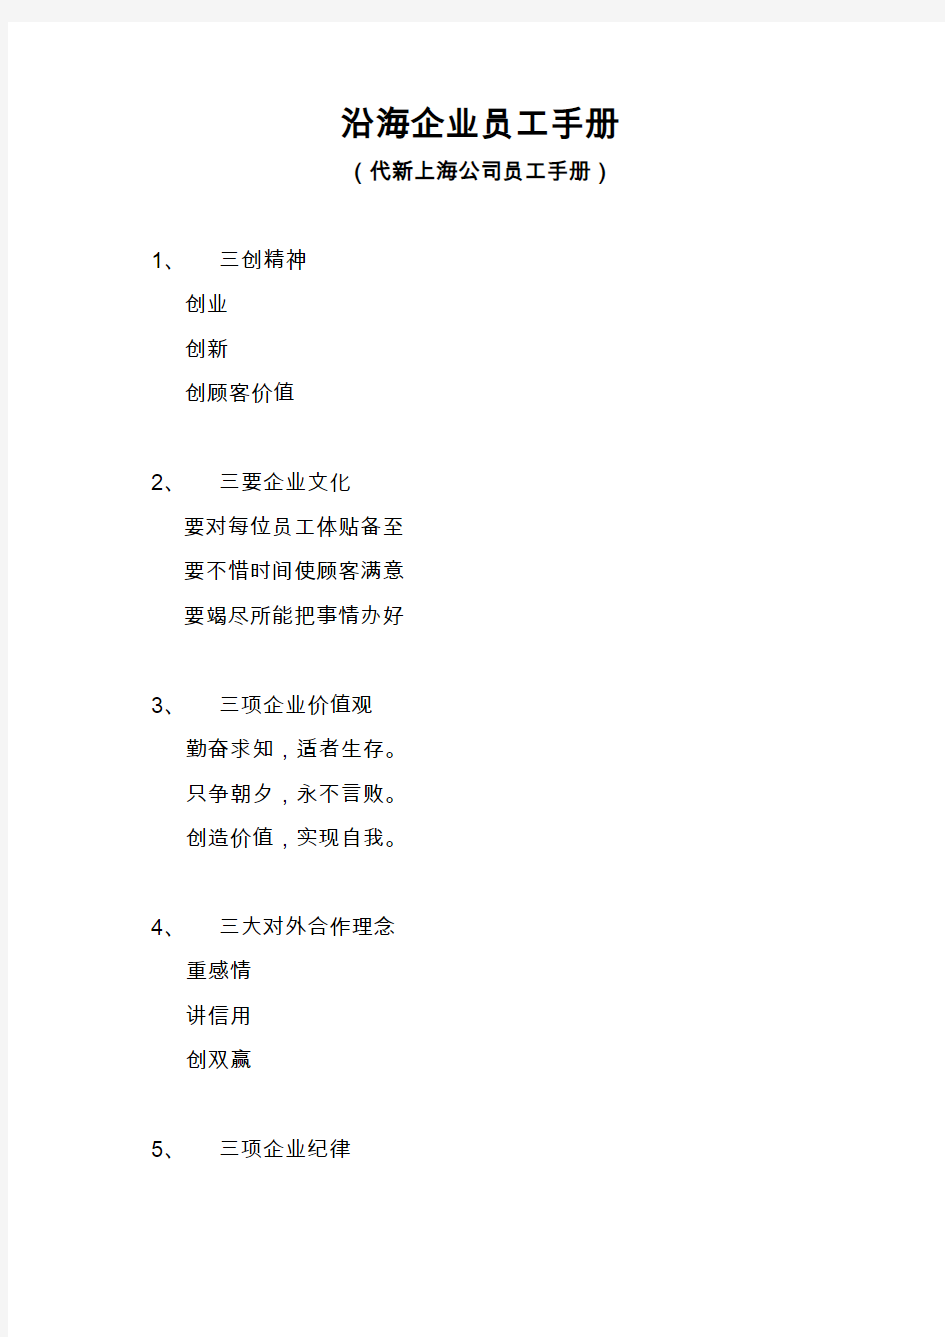 上海某公司员工手册(21页)